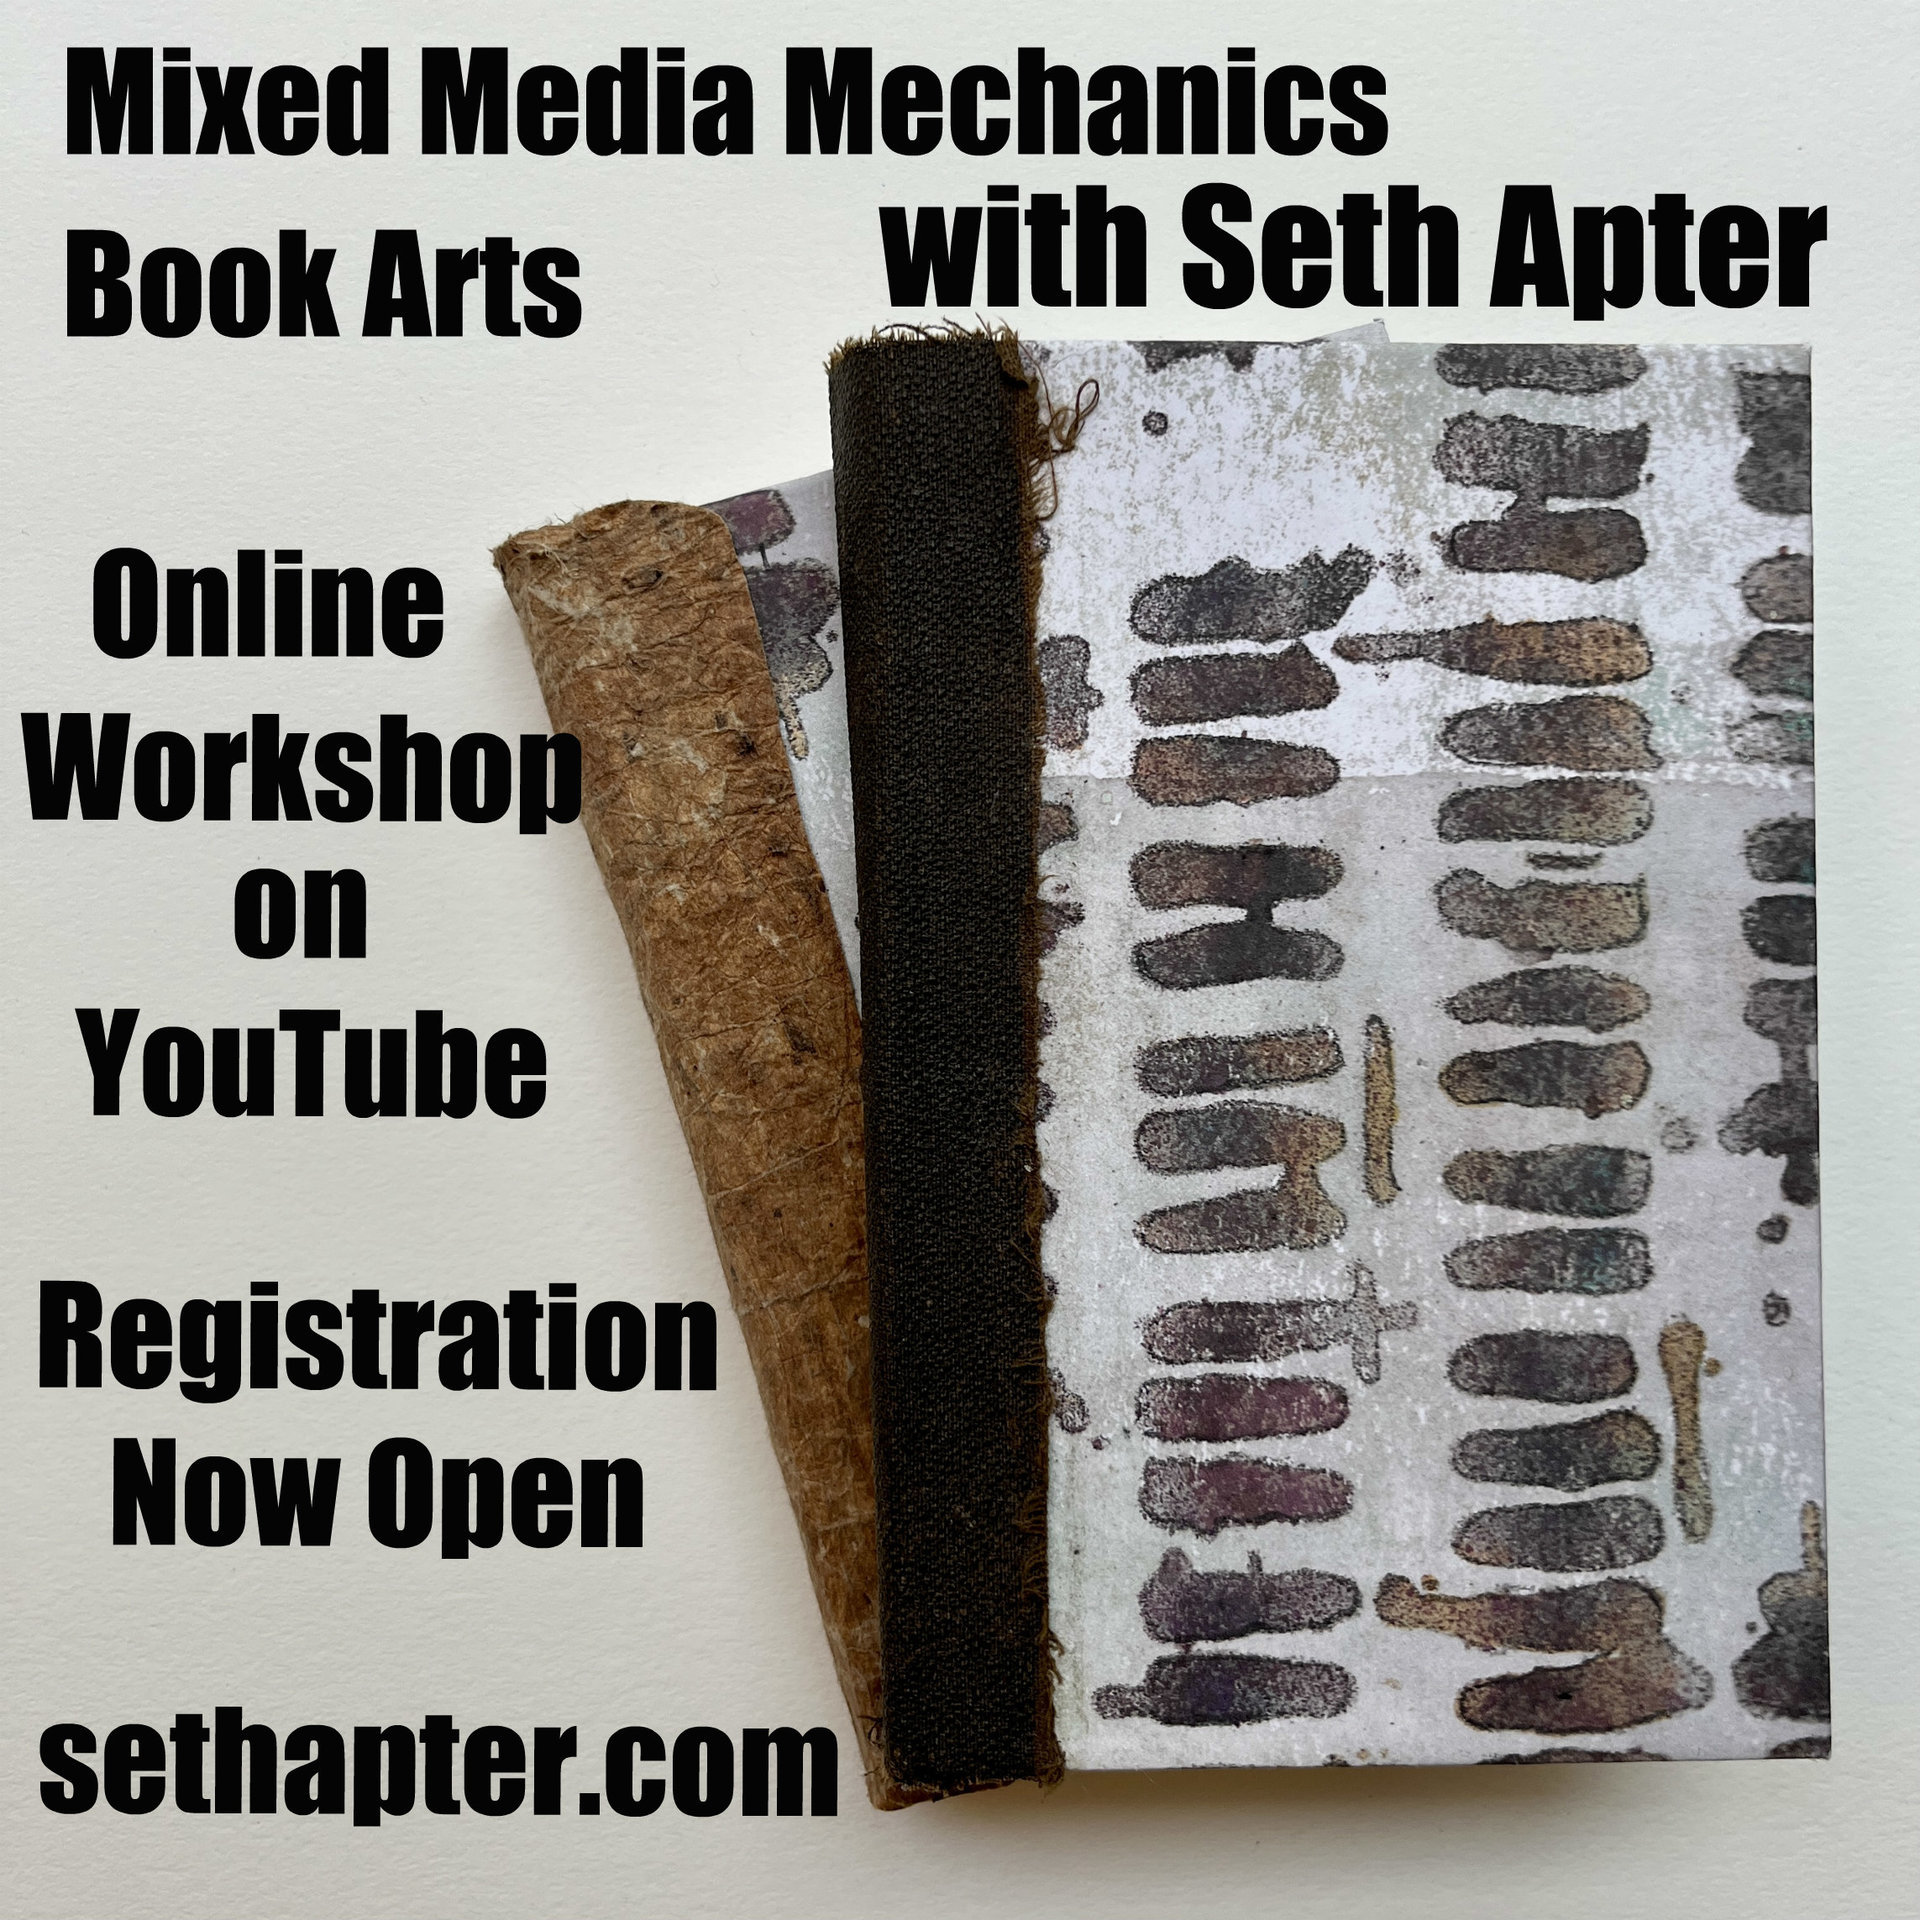 Mixed Media Mechanics: Book Arts - Recorded